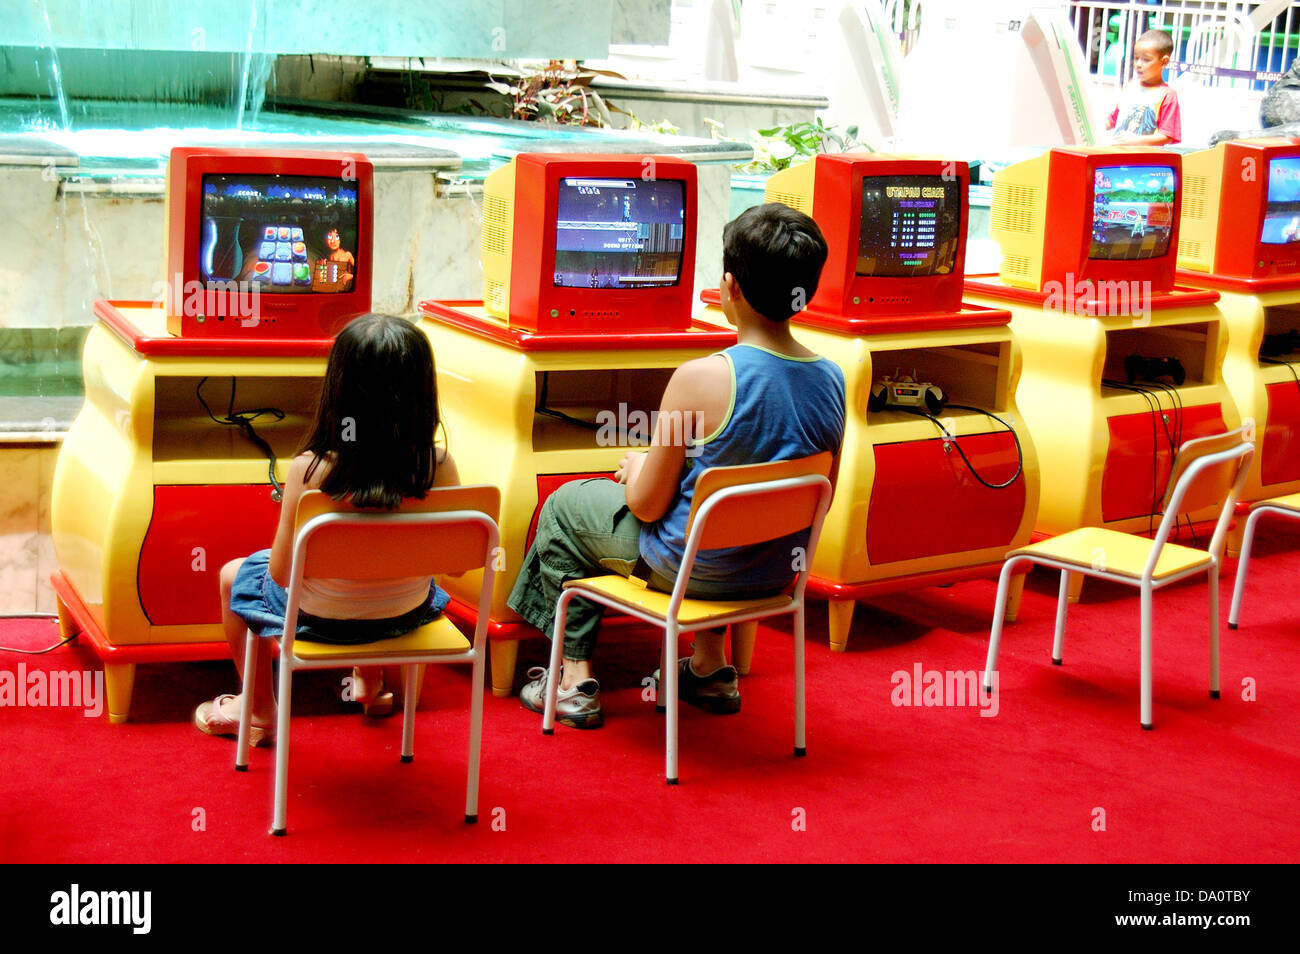 Les enfants jouer à des jeux sur ordinateur un indise play house à un centre commercial Banque D'Images